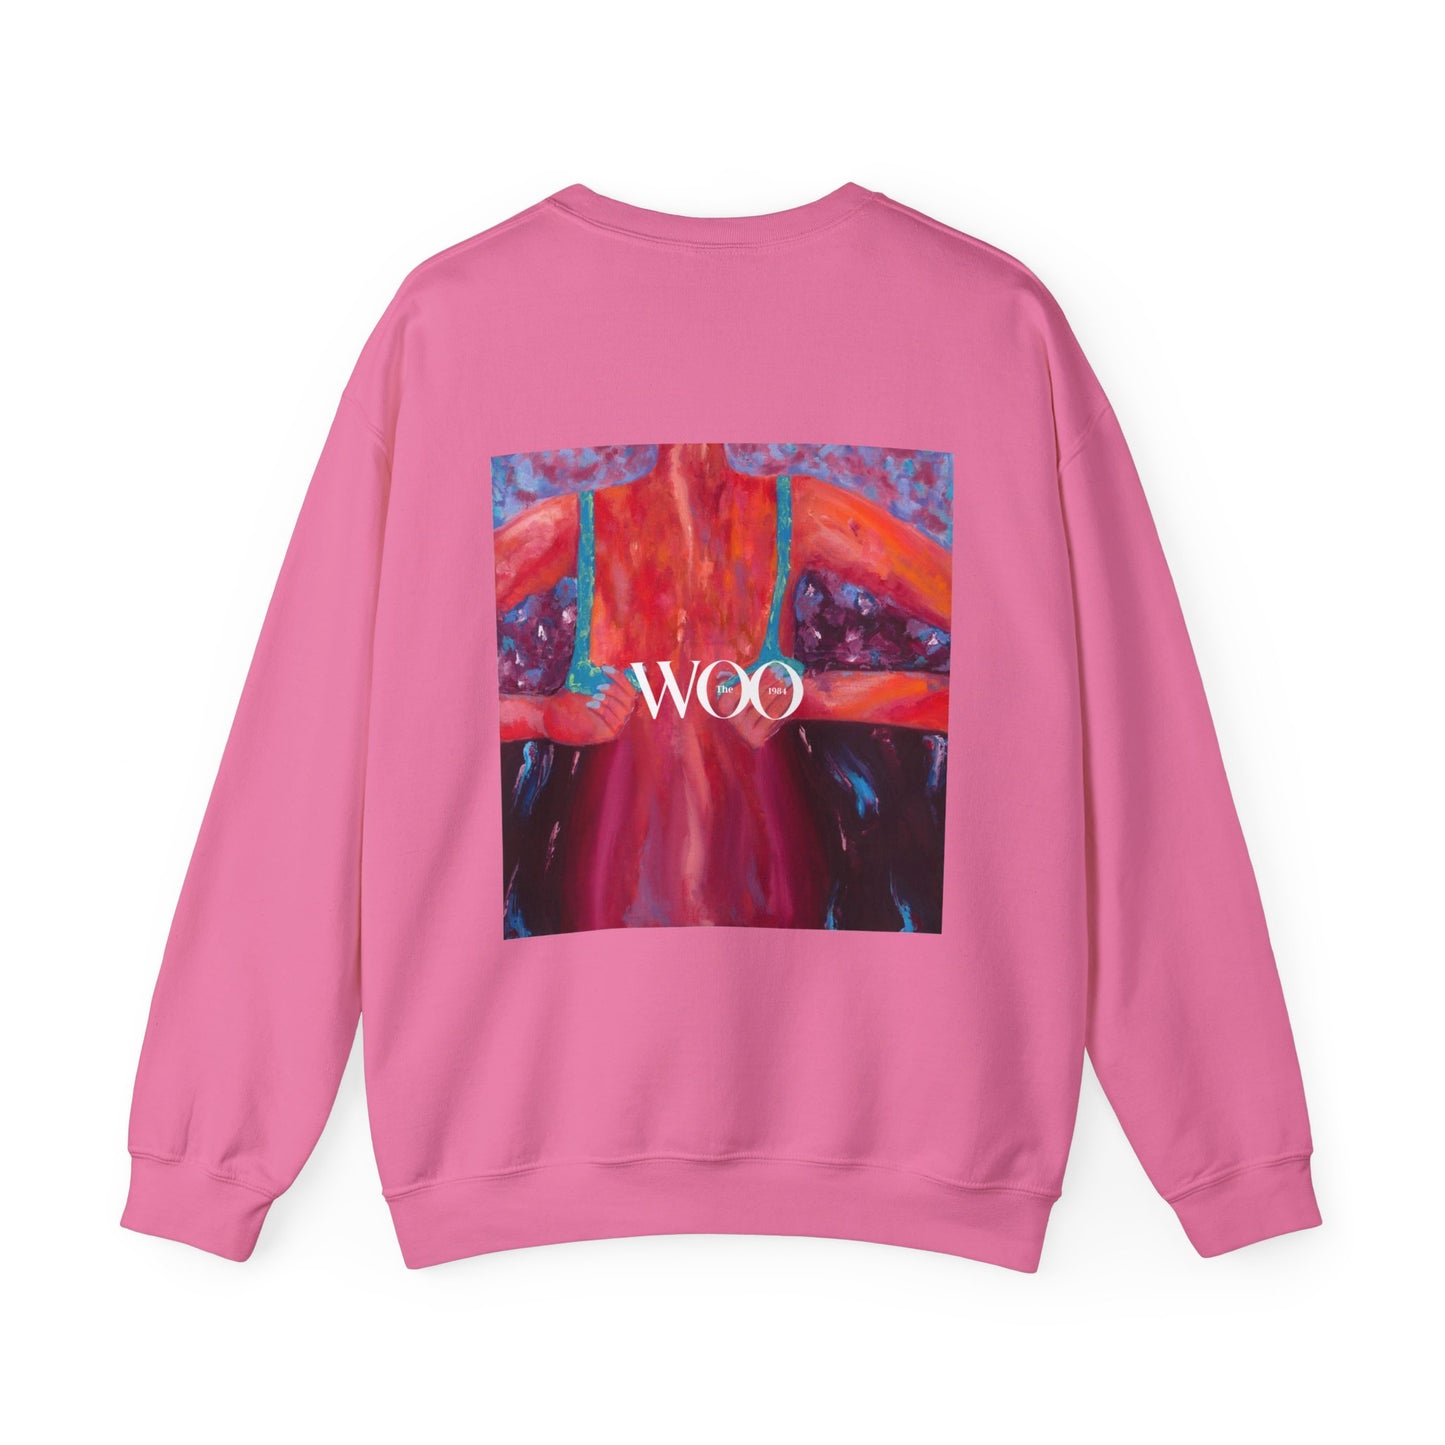 BLISS - Woo sweatshirt